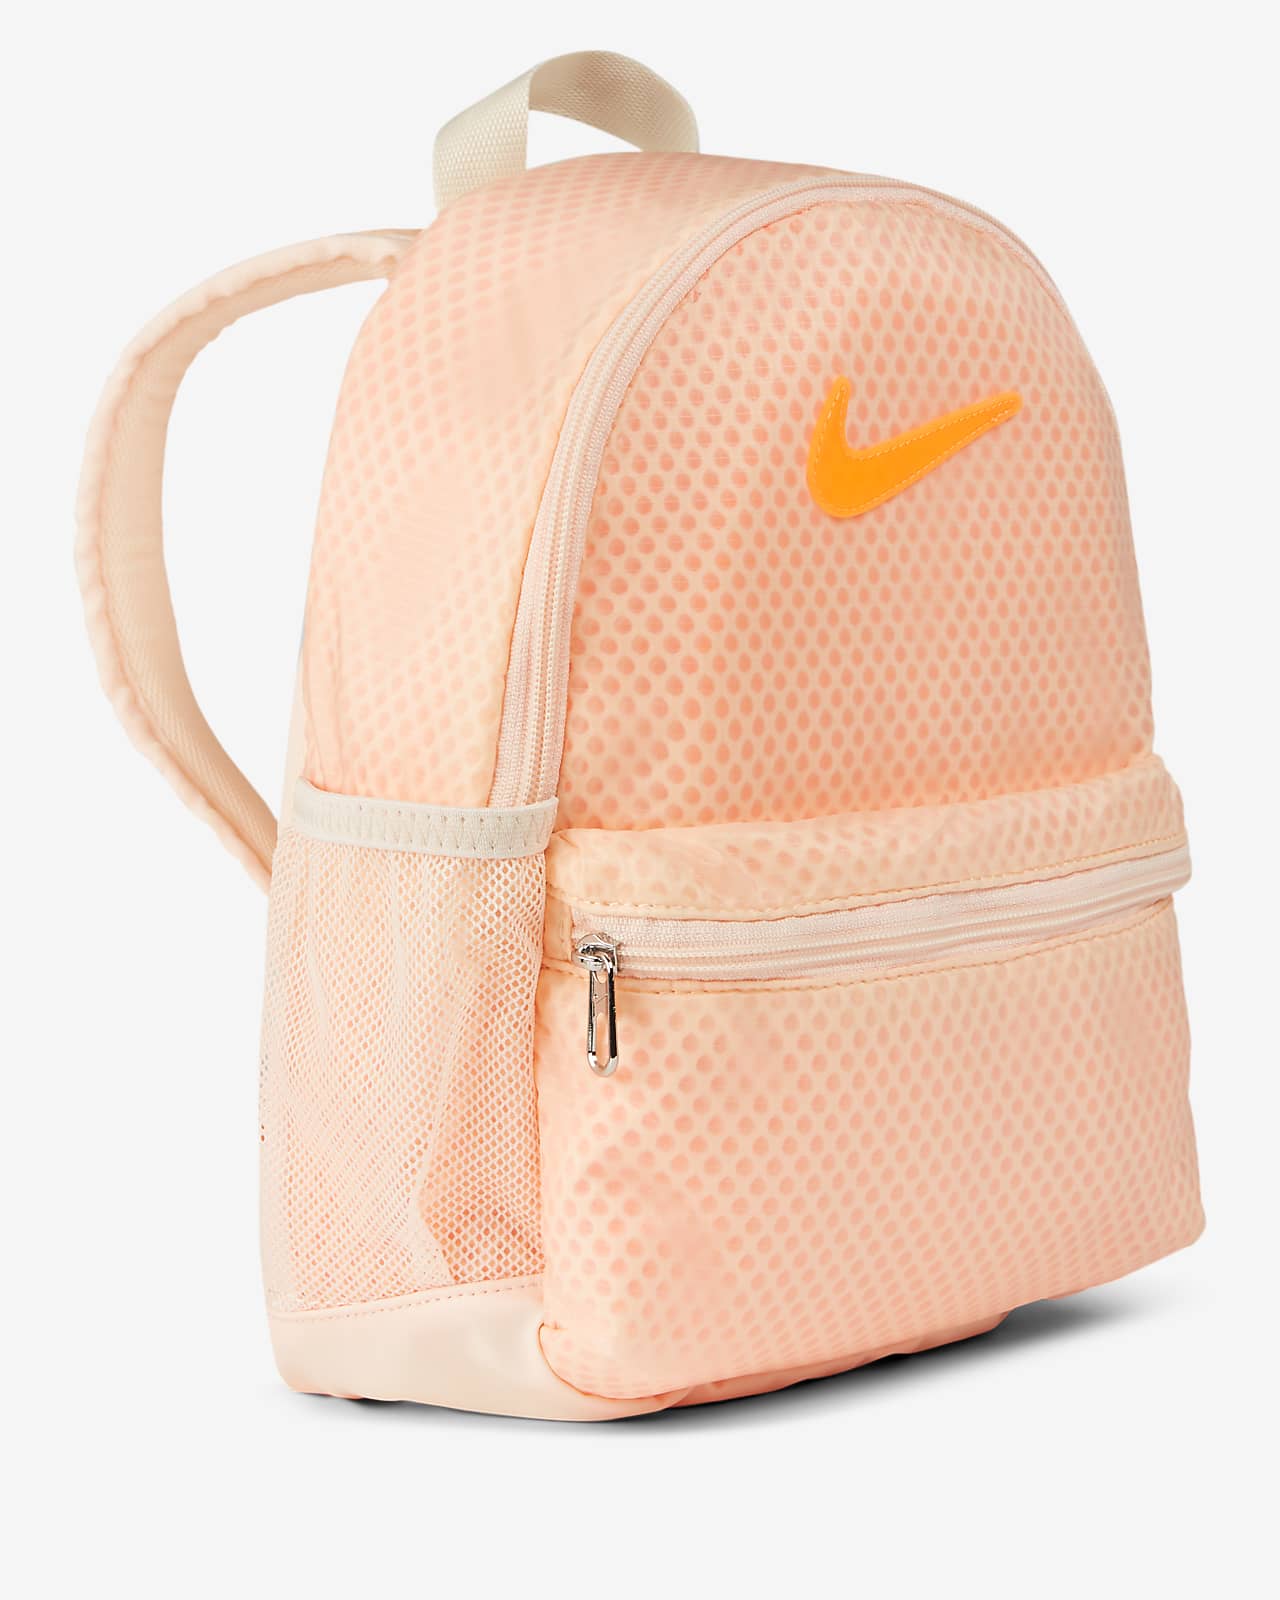 nike peach backpack